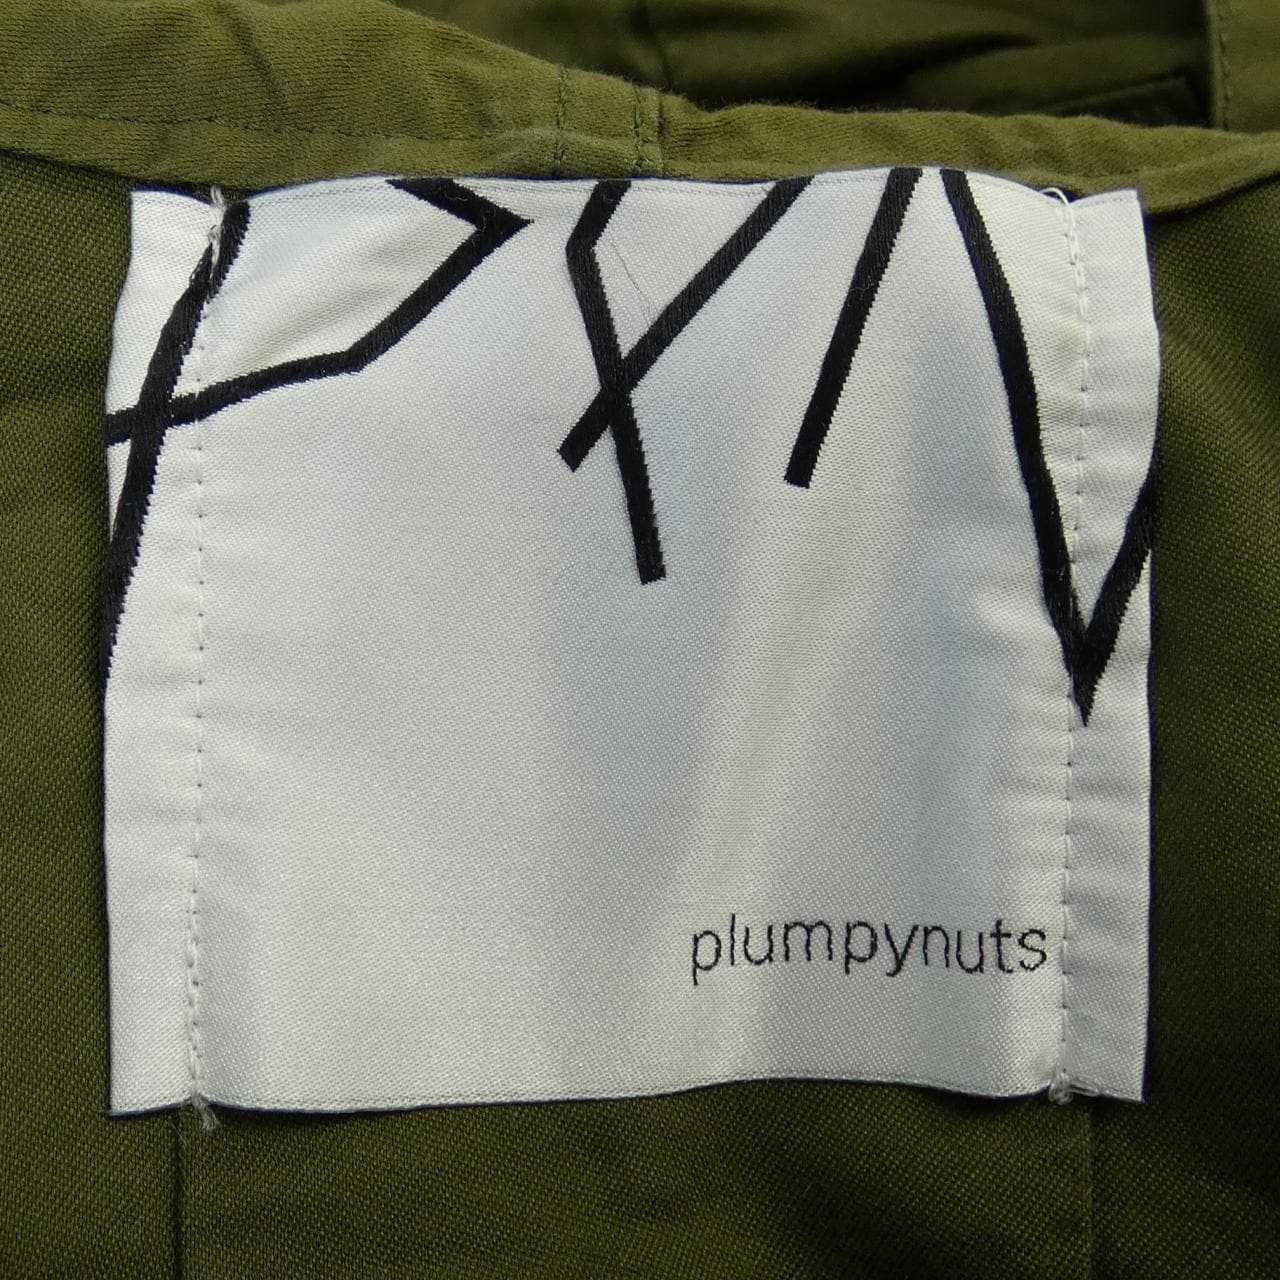 Plumpynuts coat